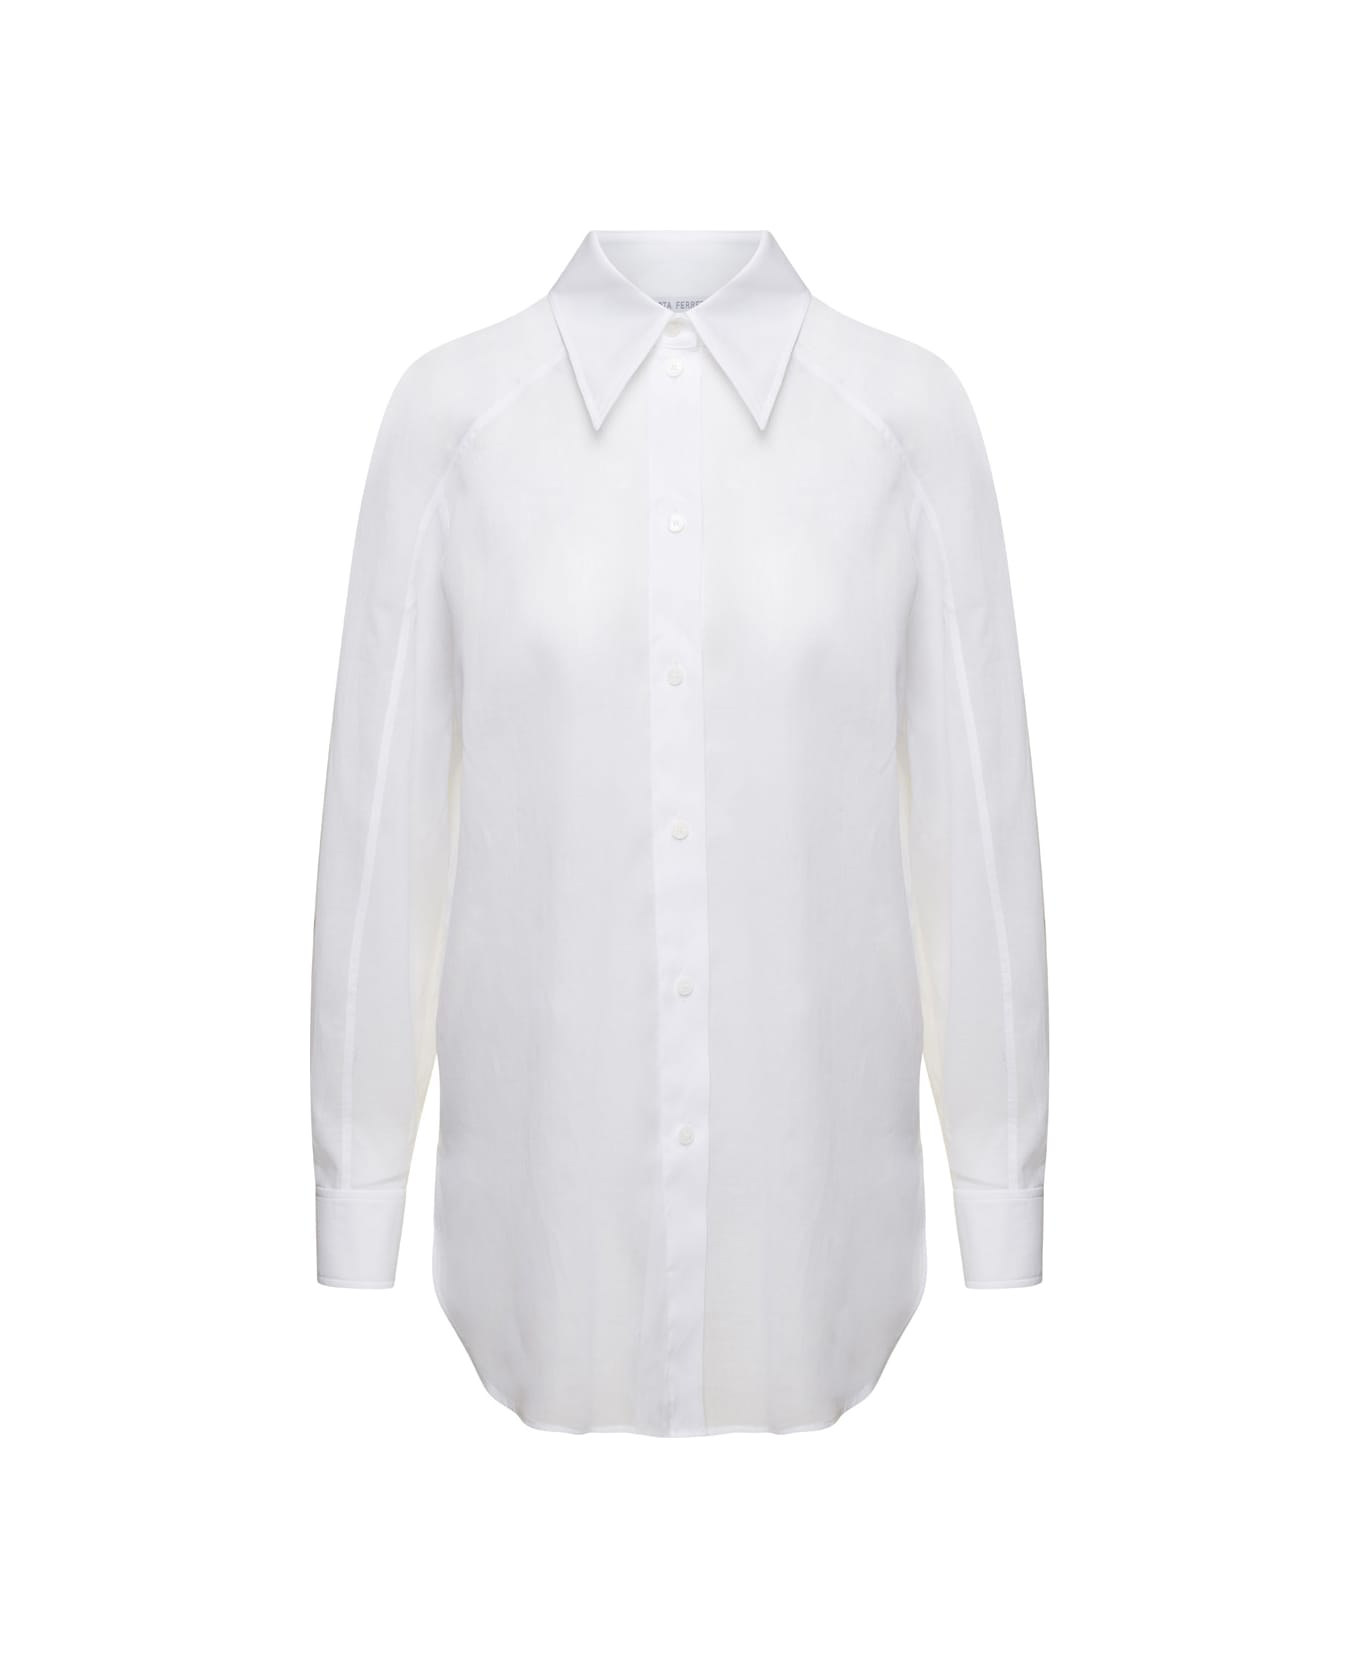 Alberta Ferretti White Maxi Shirt In Cotton Organza Woman - White